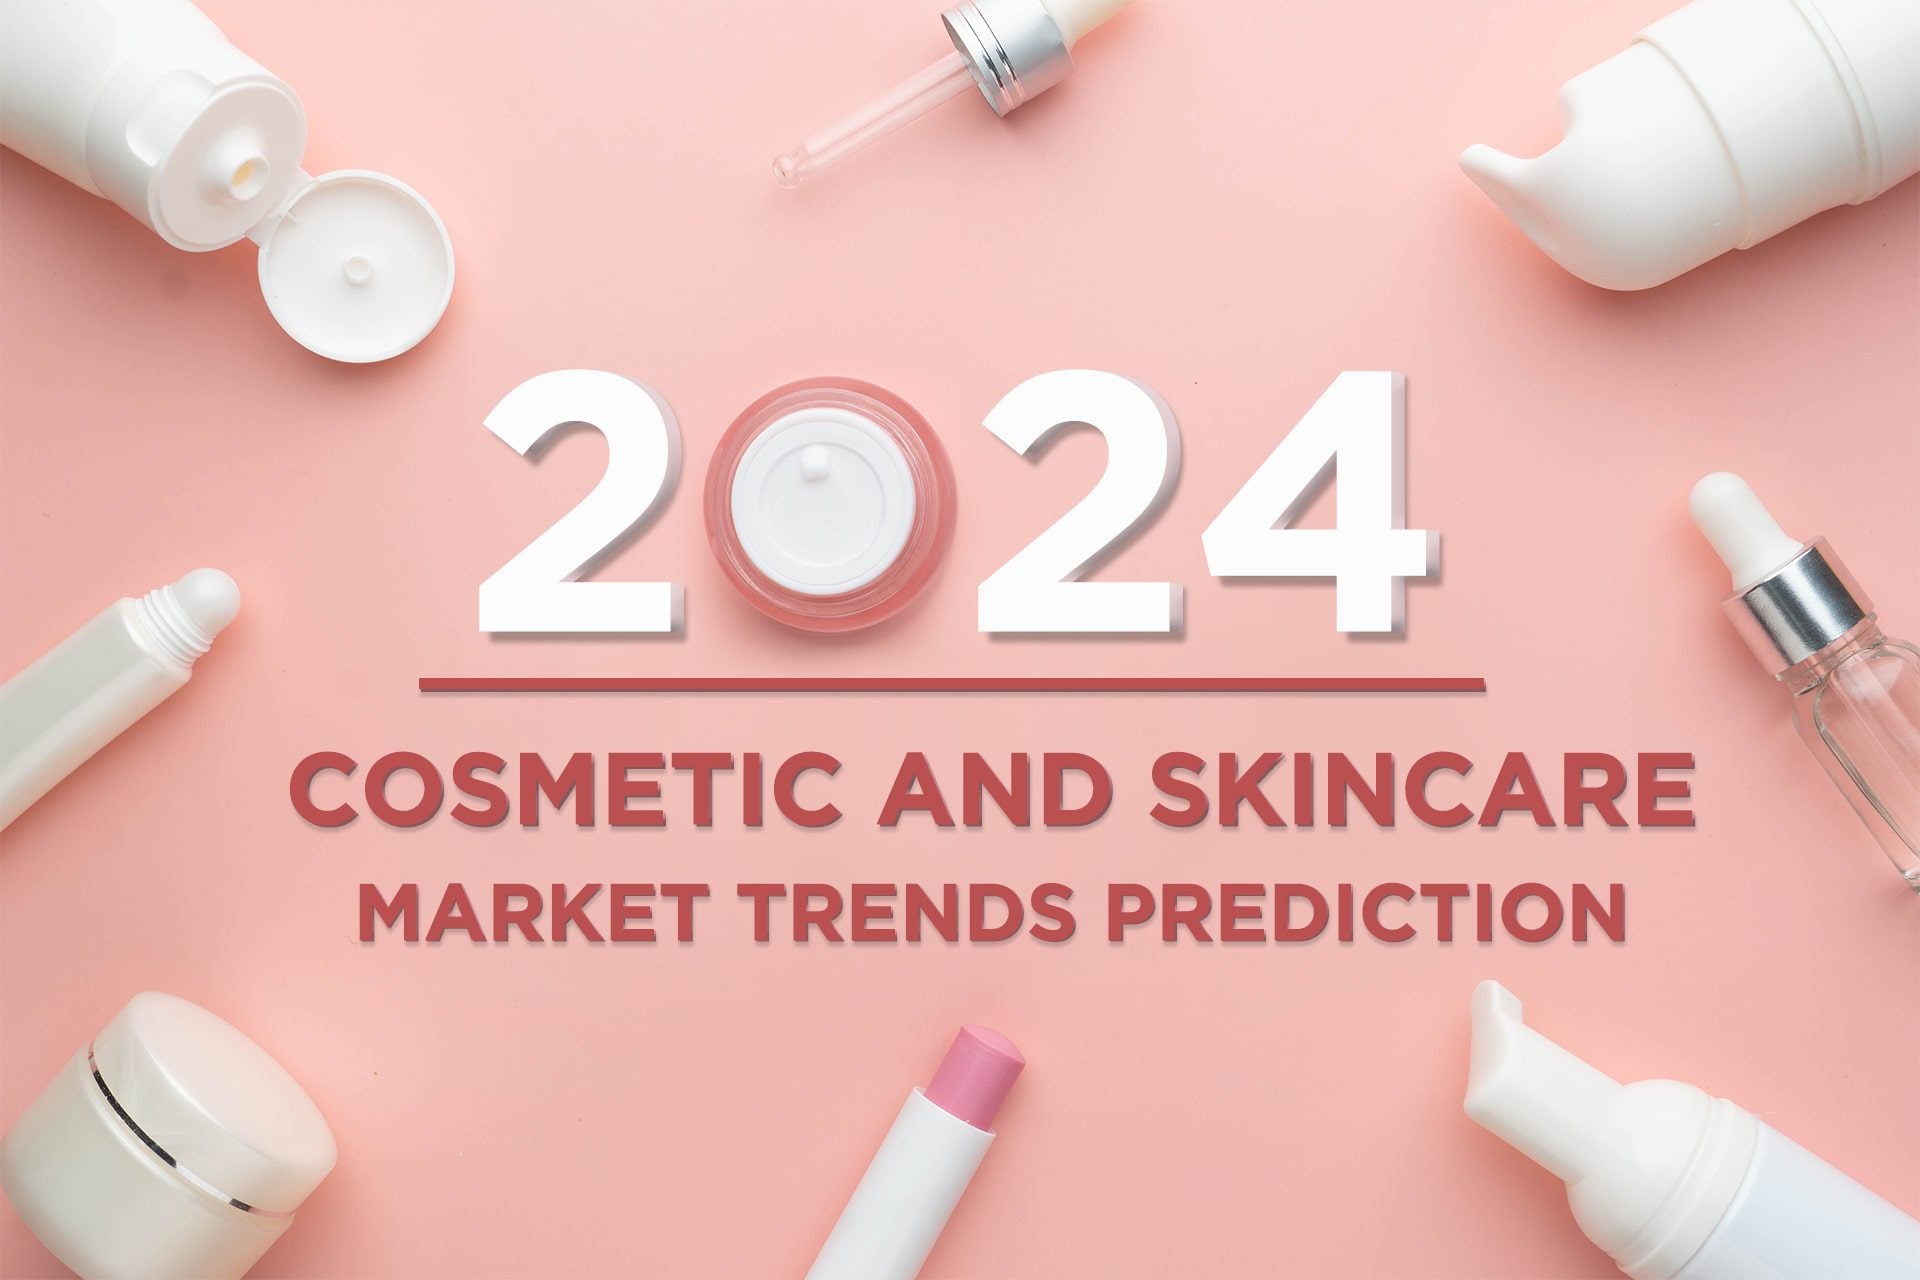 "Navigering av fremtiden: viktige trender som former kosmetikkindustrien"